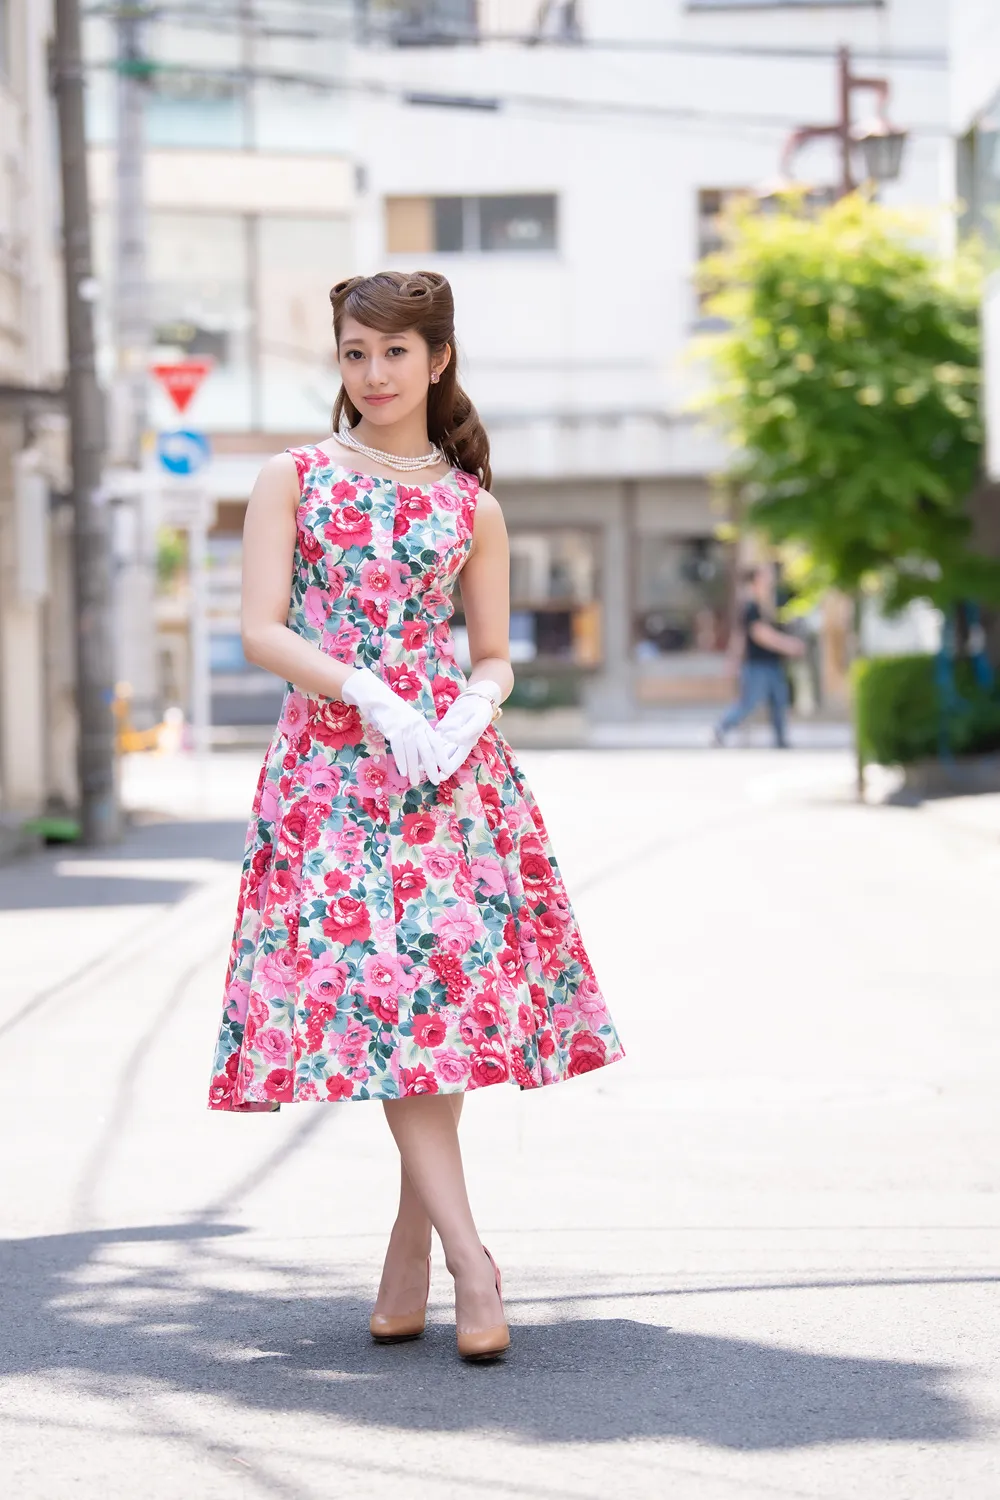 【写真を見る】桜井玲香は1950年代の設定らしい独特なファッションの役衣装に「キャピキャピした」と語った